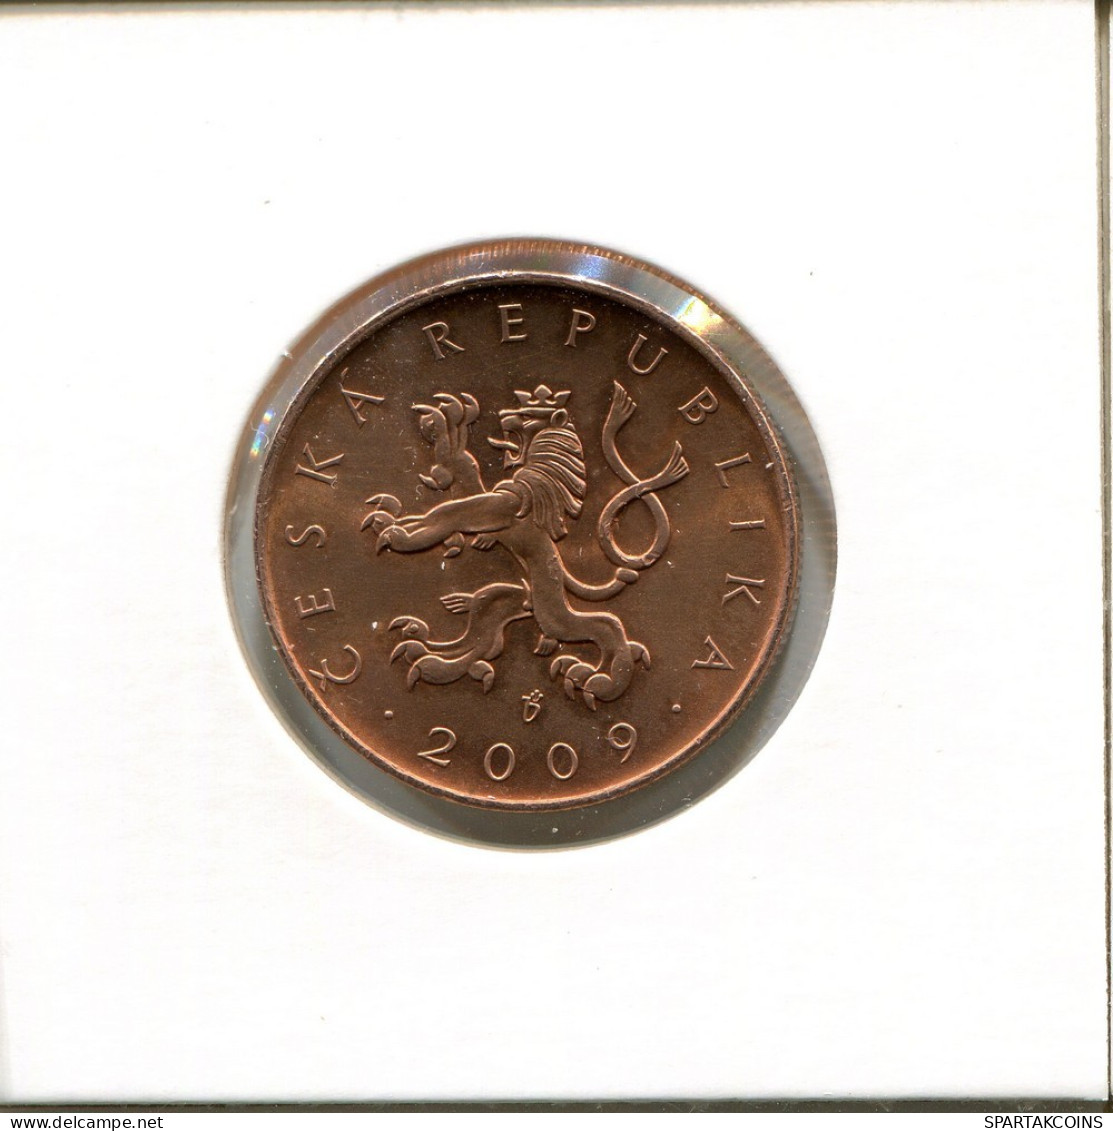 10 KORUN 2009 REPÚBLICA CHECA CZECH REPUBLIC Moneda #AP782.2.E.A - Tschechische Rep.